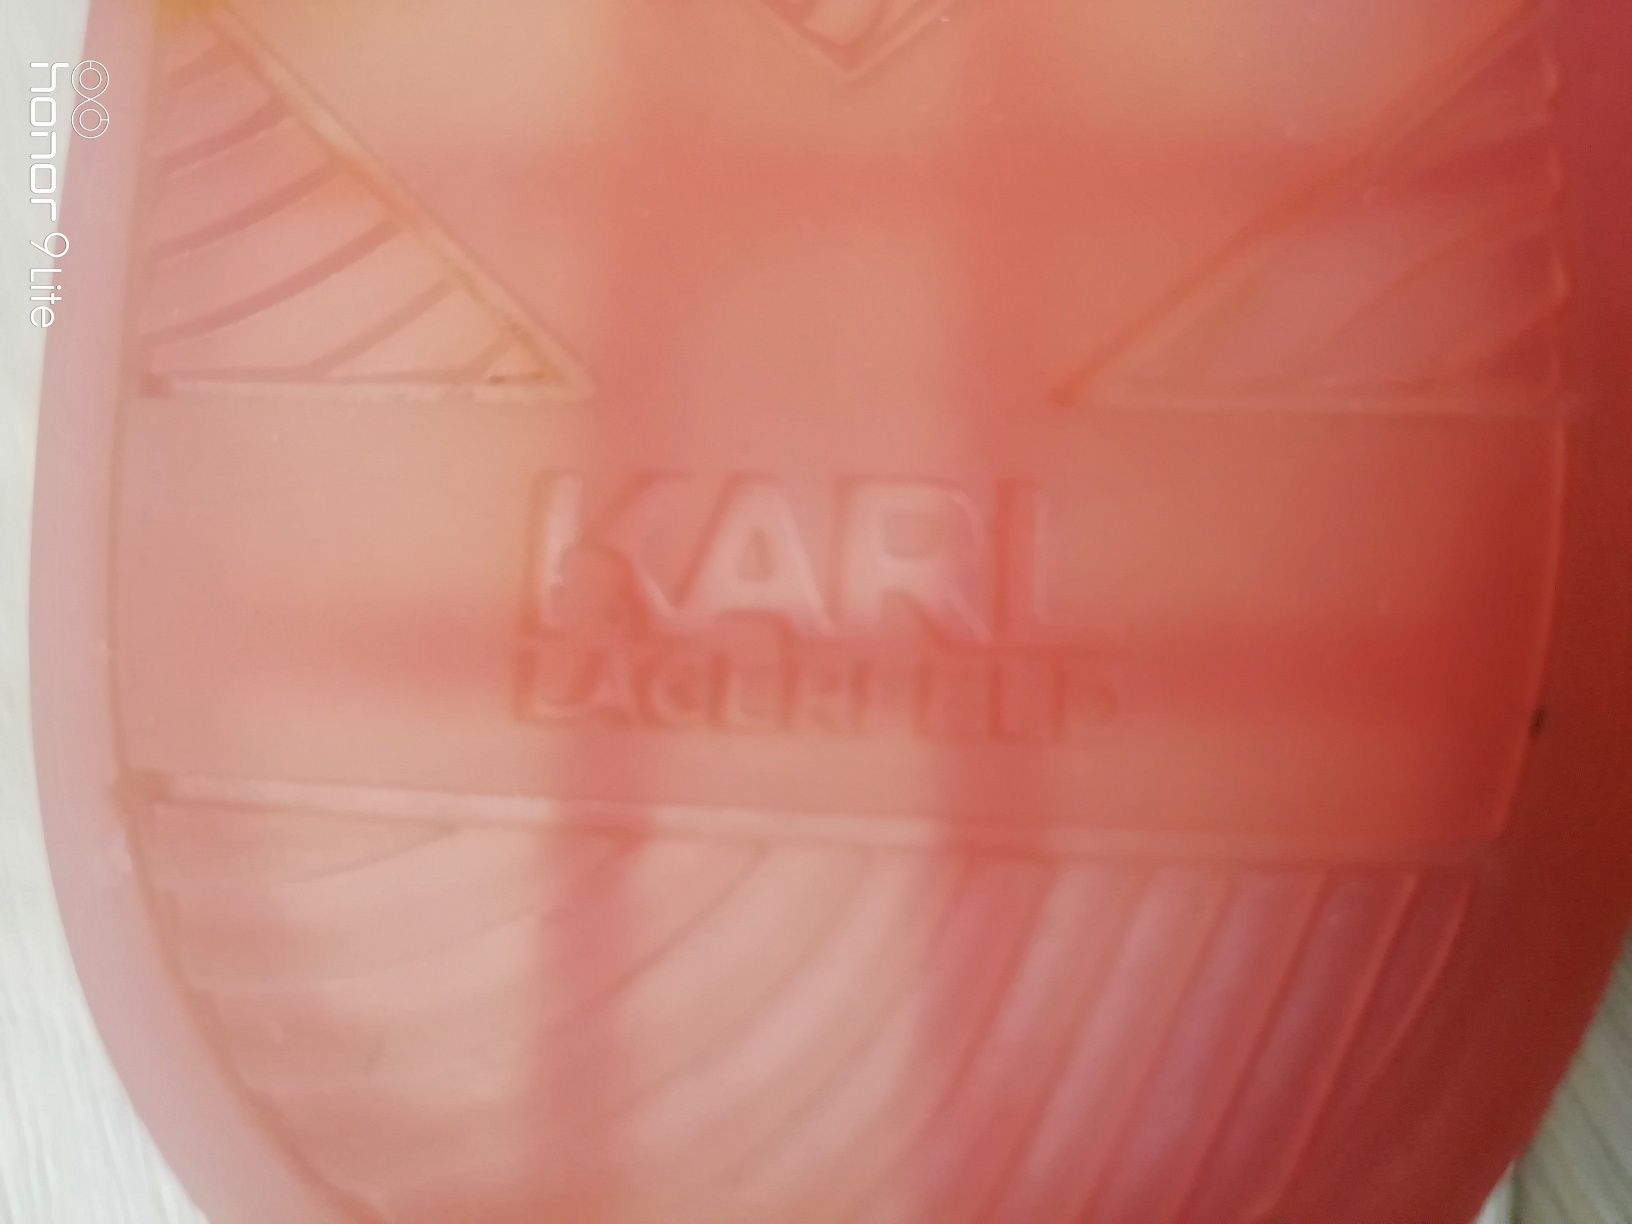 Karl Lagerfeld дамски сникърси (кецове) 37 номер.